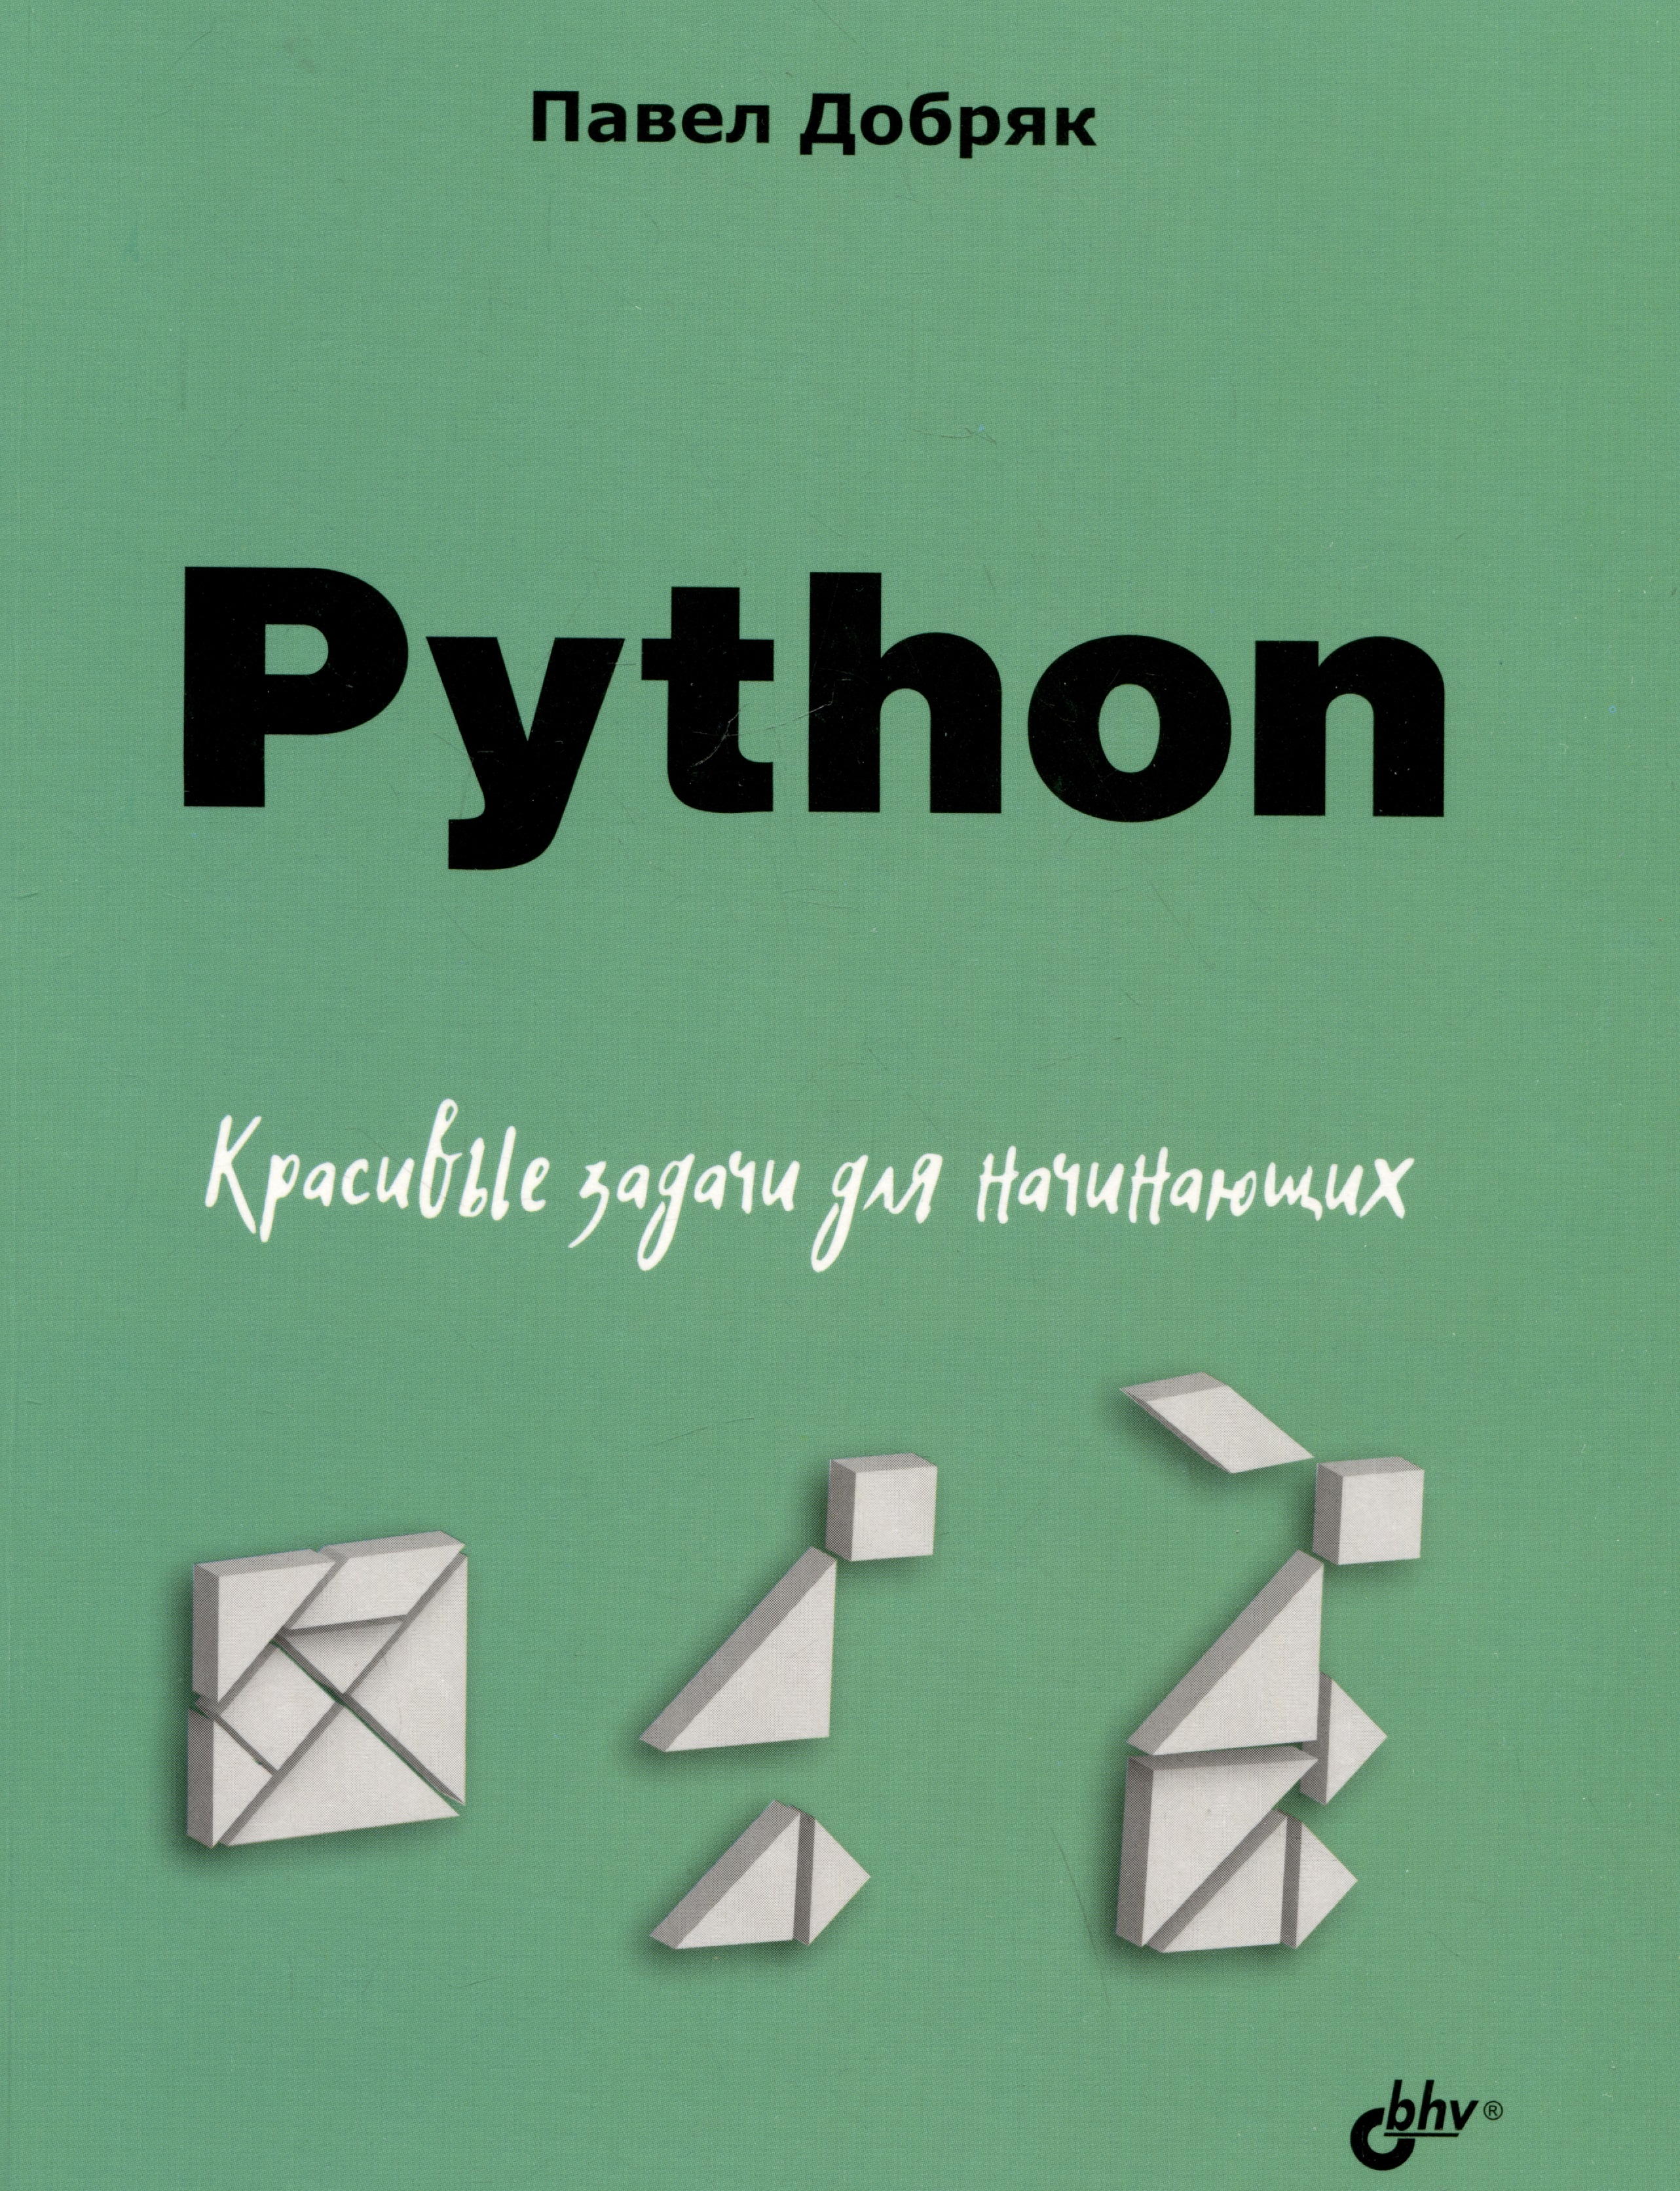 Добряк Павел Вадимович Python. Красивые задачи для начинающих добряк п в python 12 уроков для начинающих